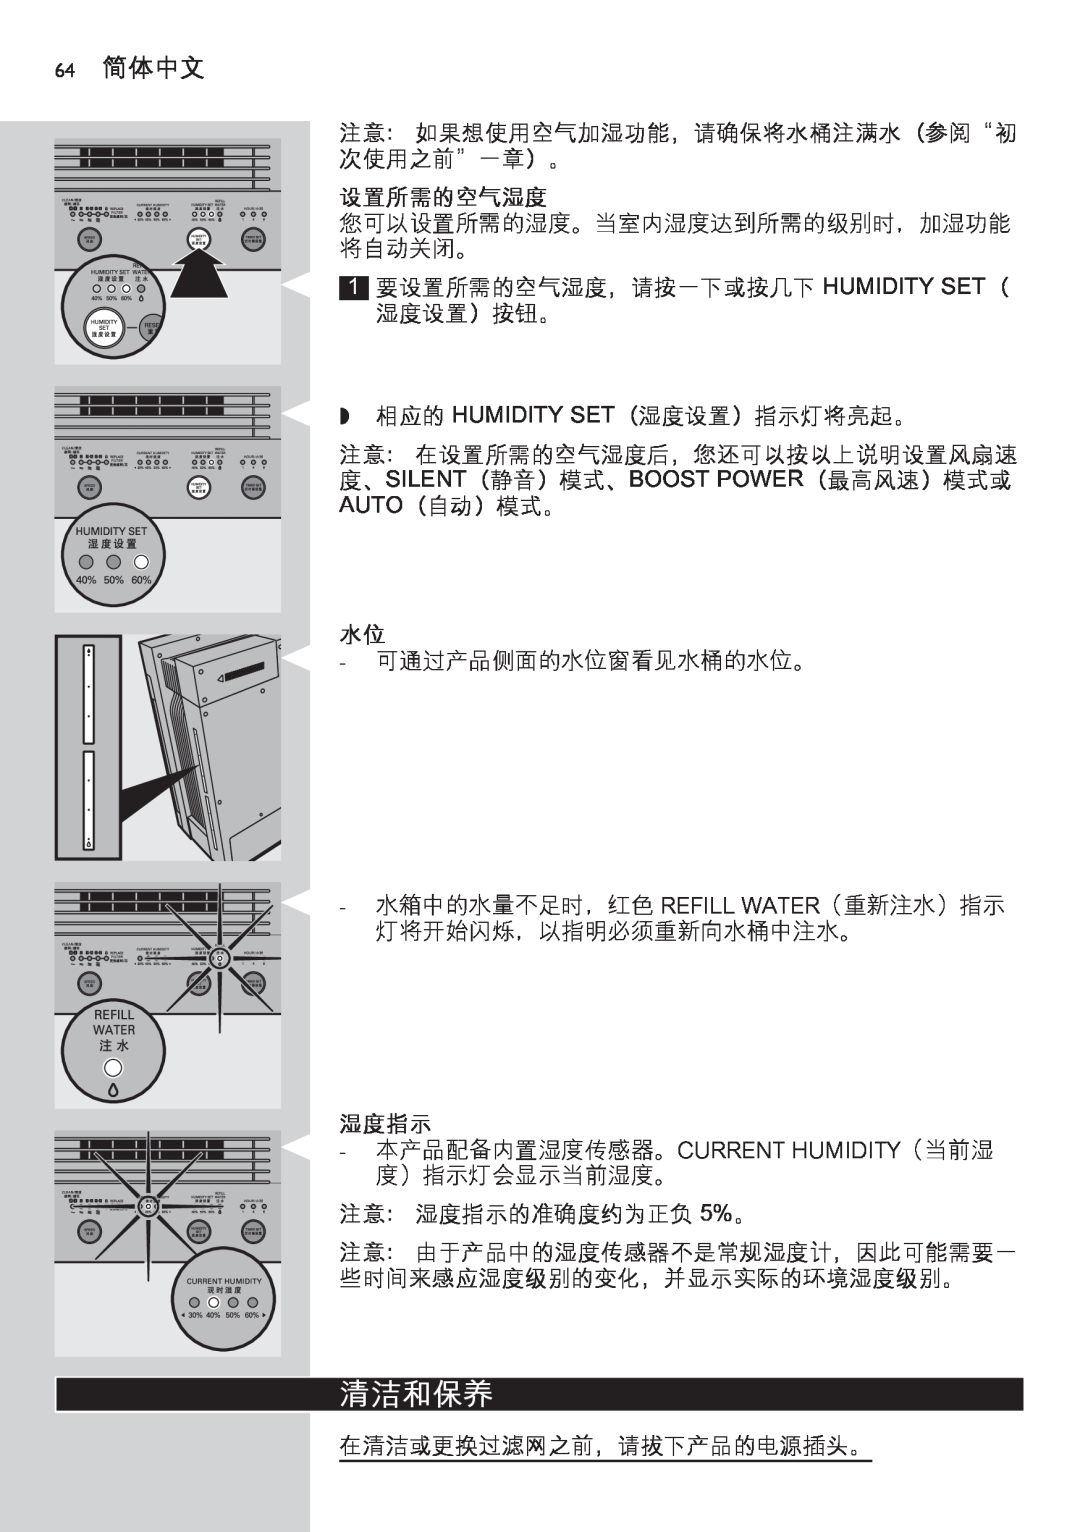 Philips AC4083 manual 清洁和保养, 64简体中文, 设置所需的空气湿度, 湿度指示 